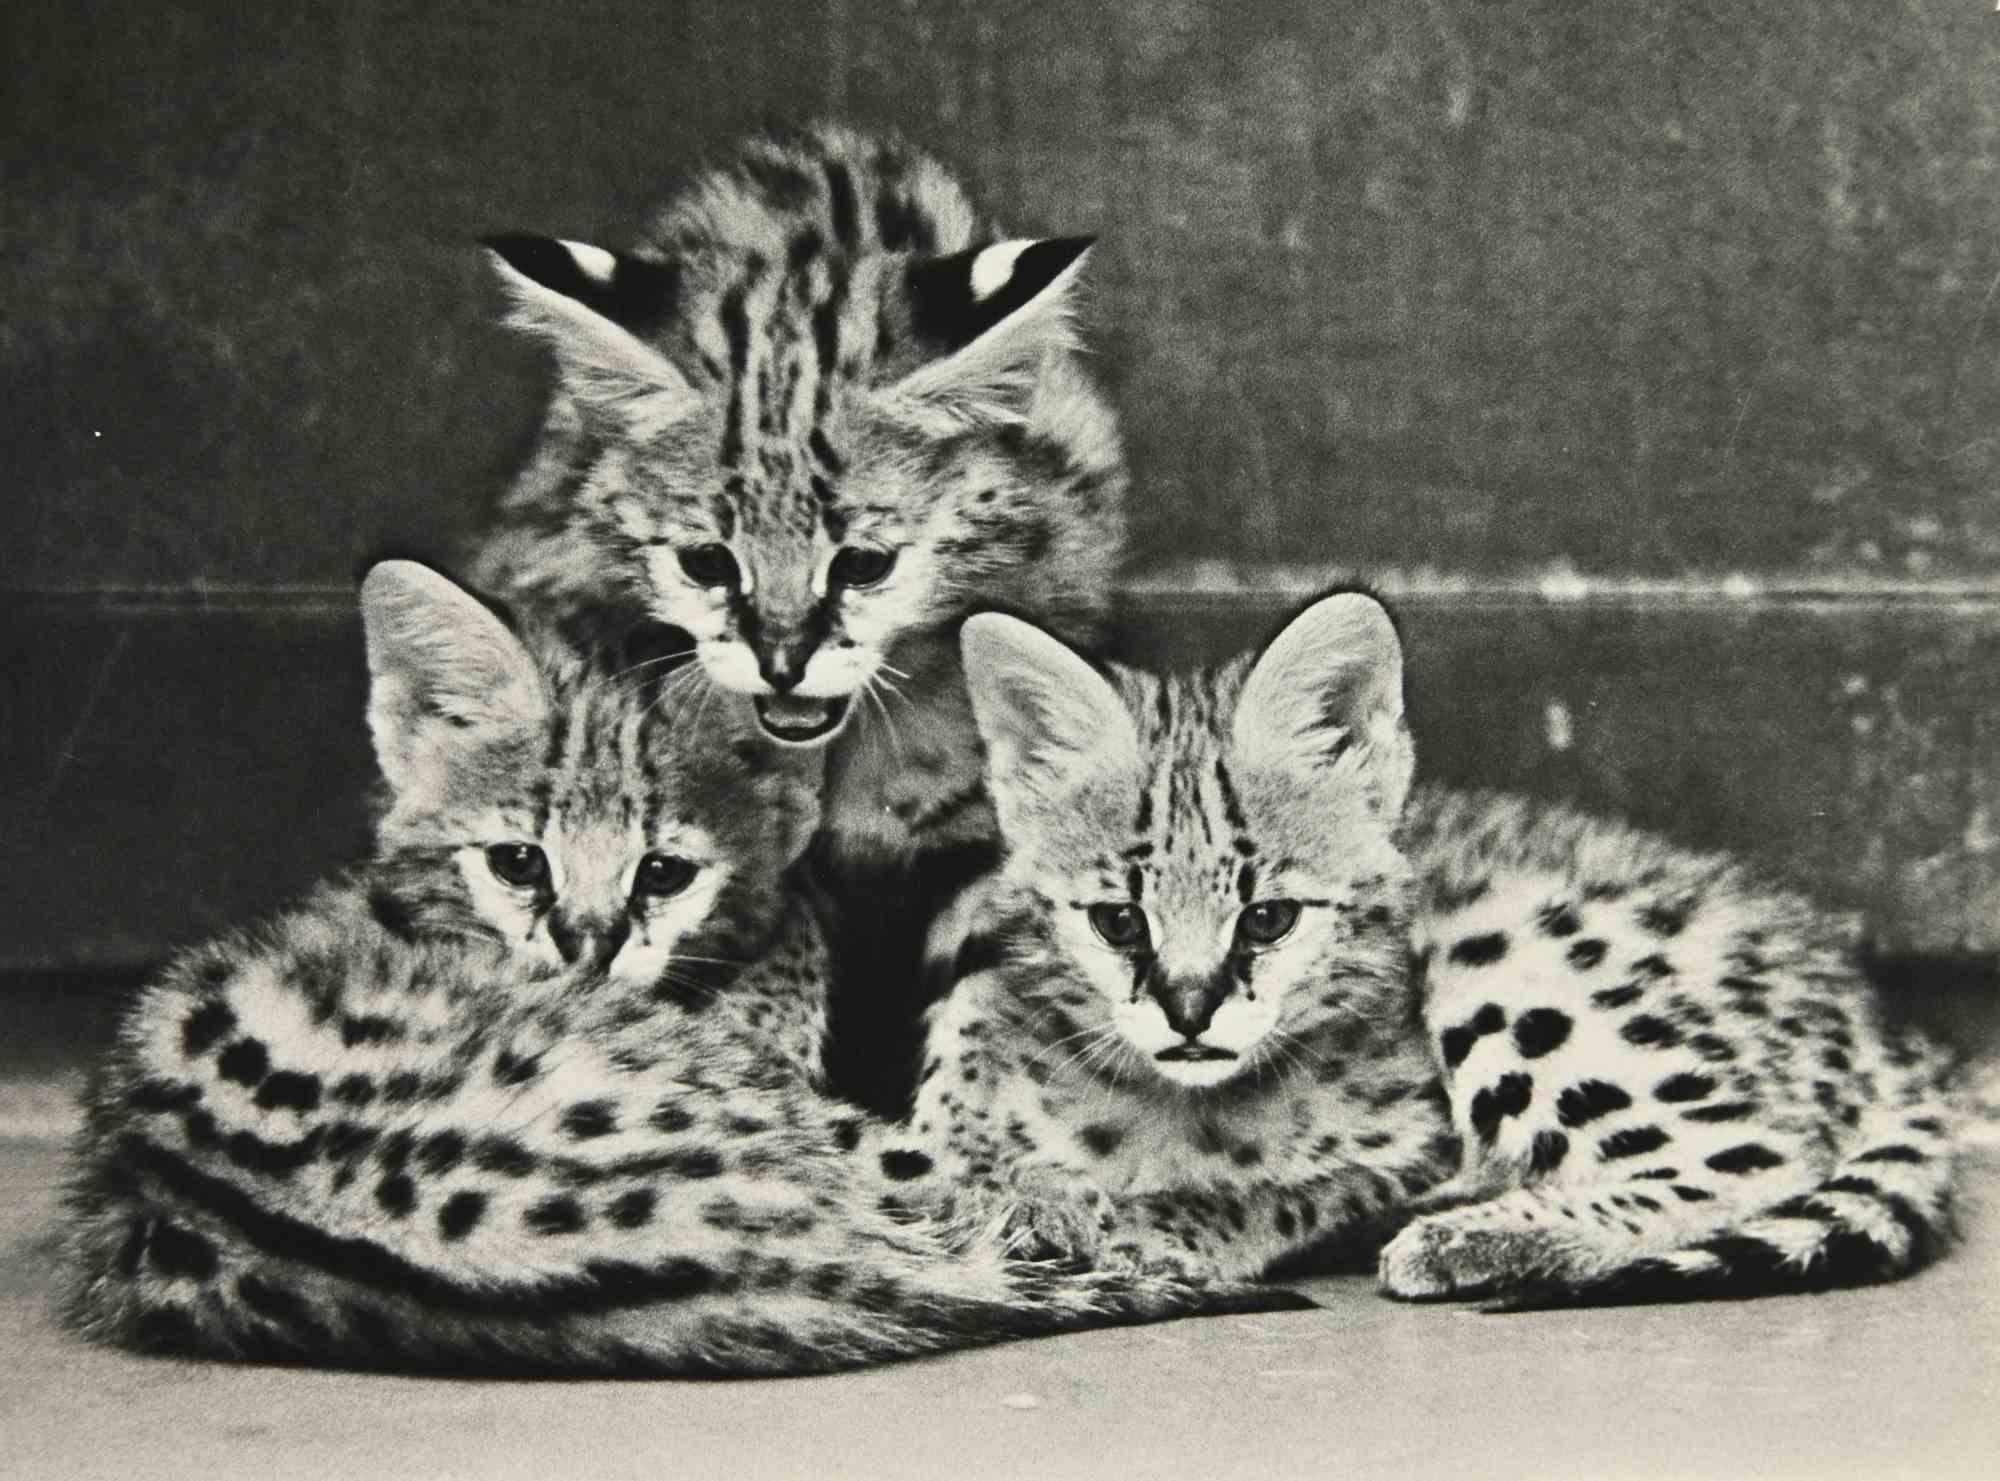 Unknown Figurative Photograph - Savannah Cat - Vintage Photograph - 1960s